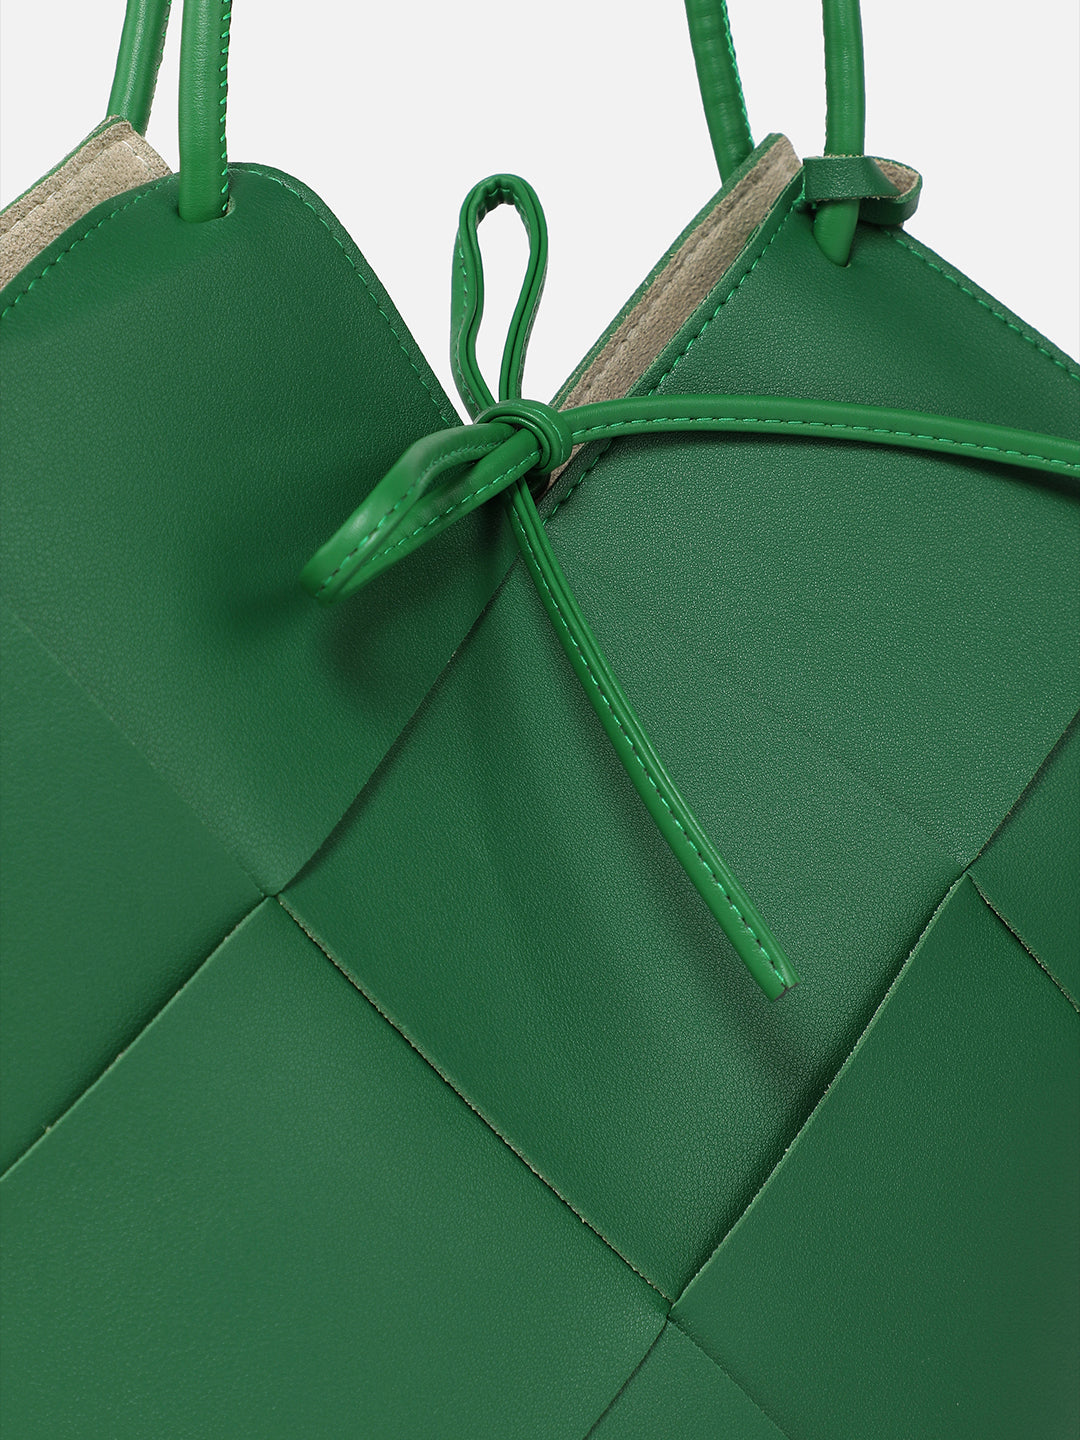 Jade Green Handbag